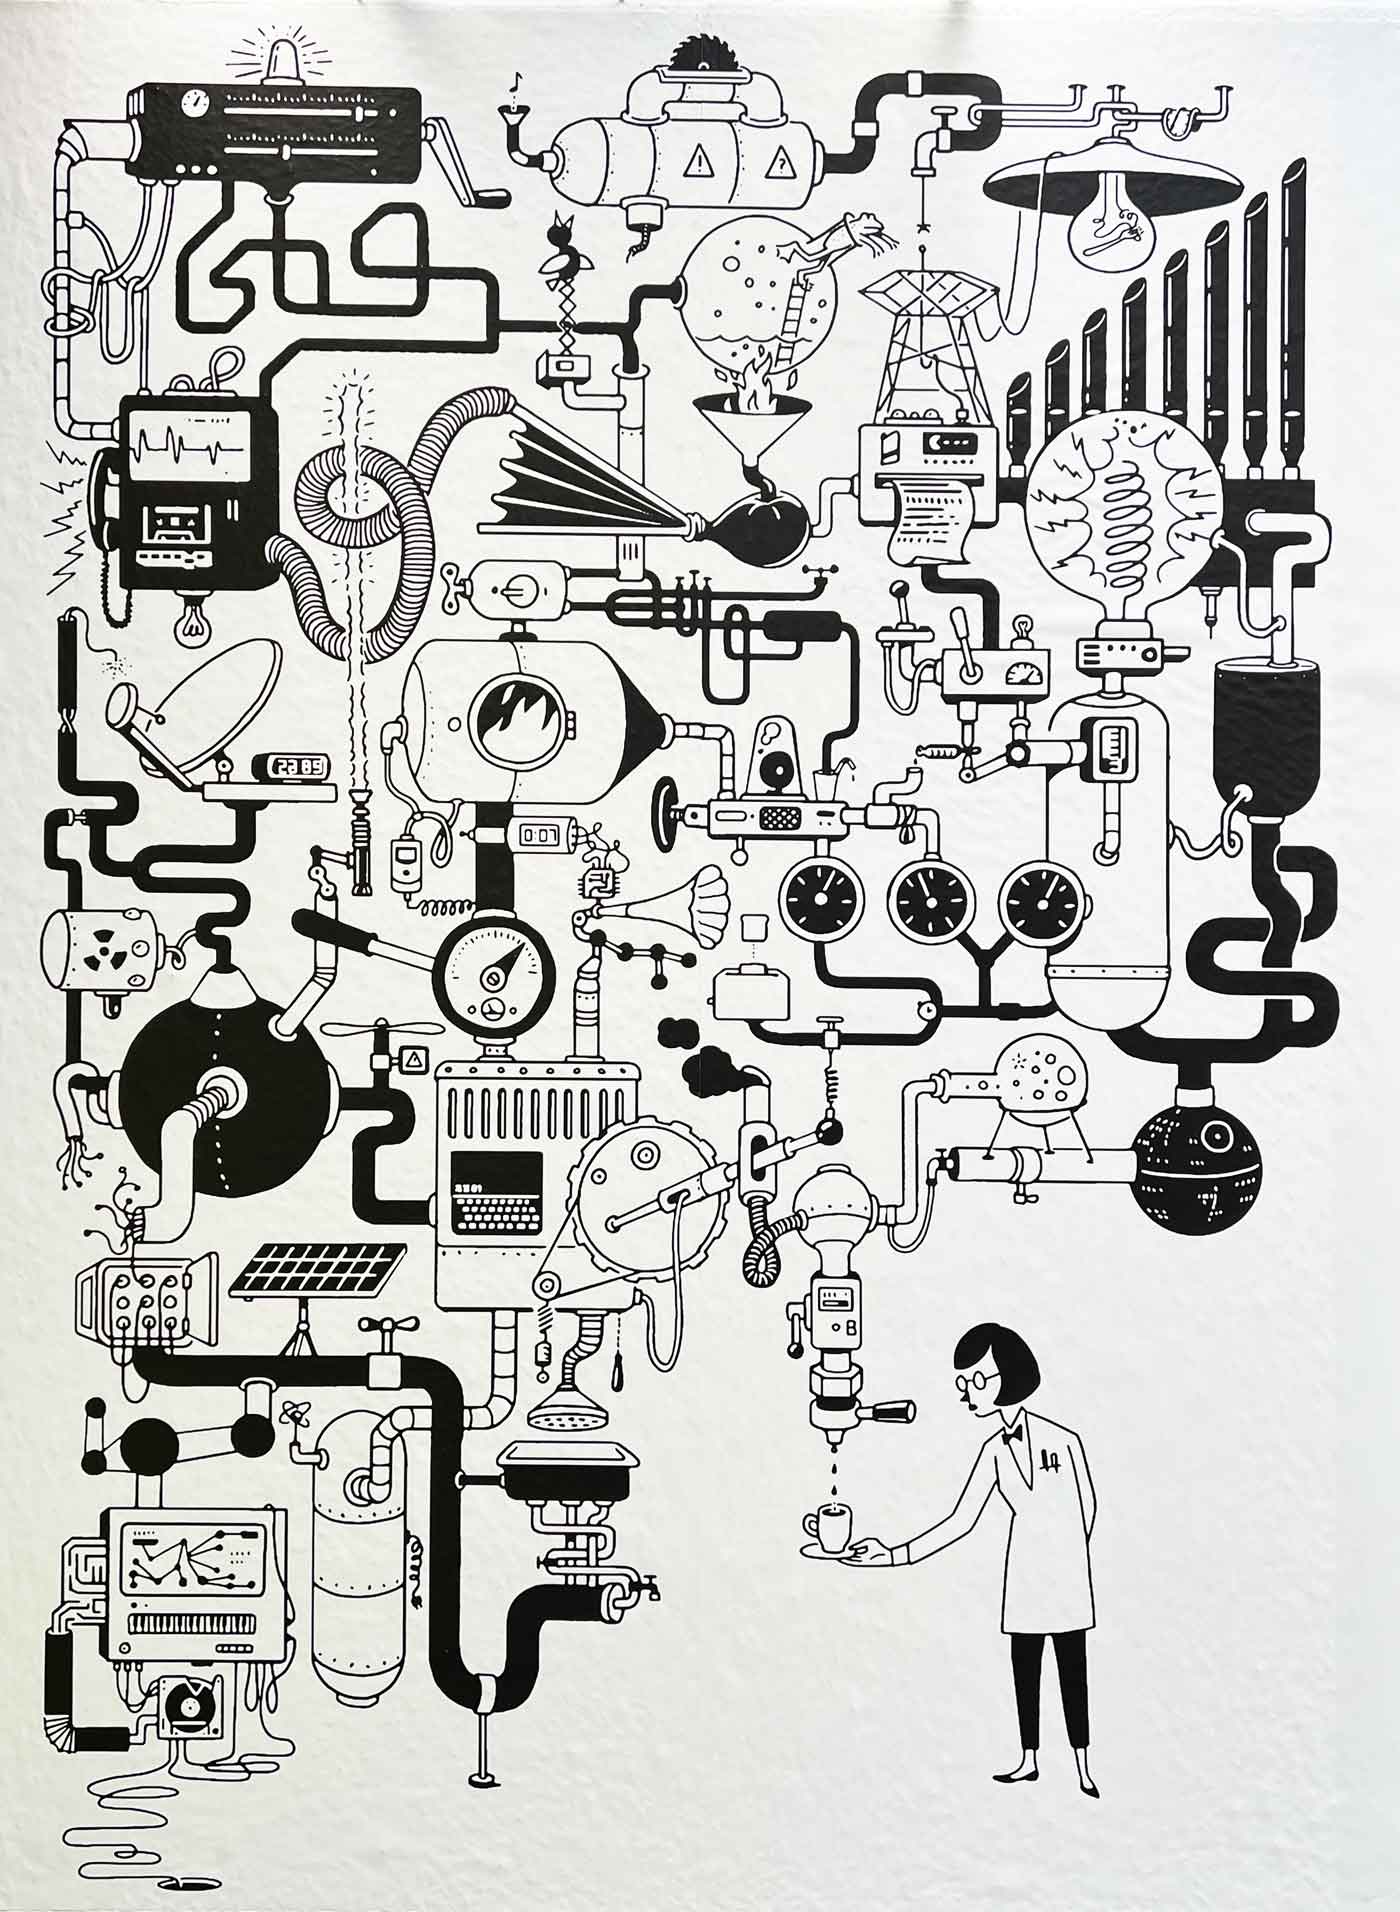 Schwarz-weiße Illustration einer komplexen Maschine zu Kaffee-Zubereiten